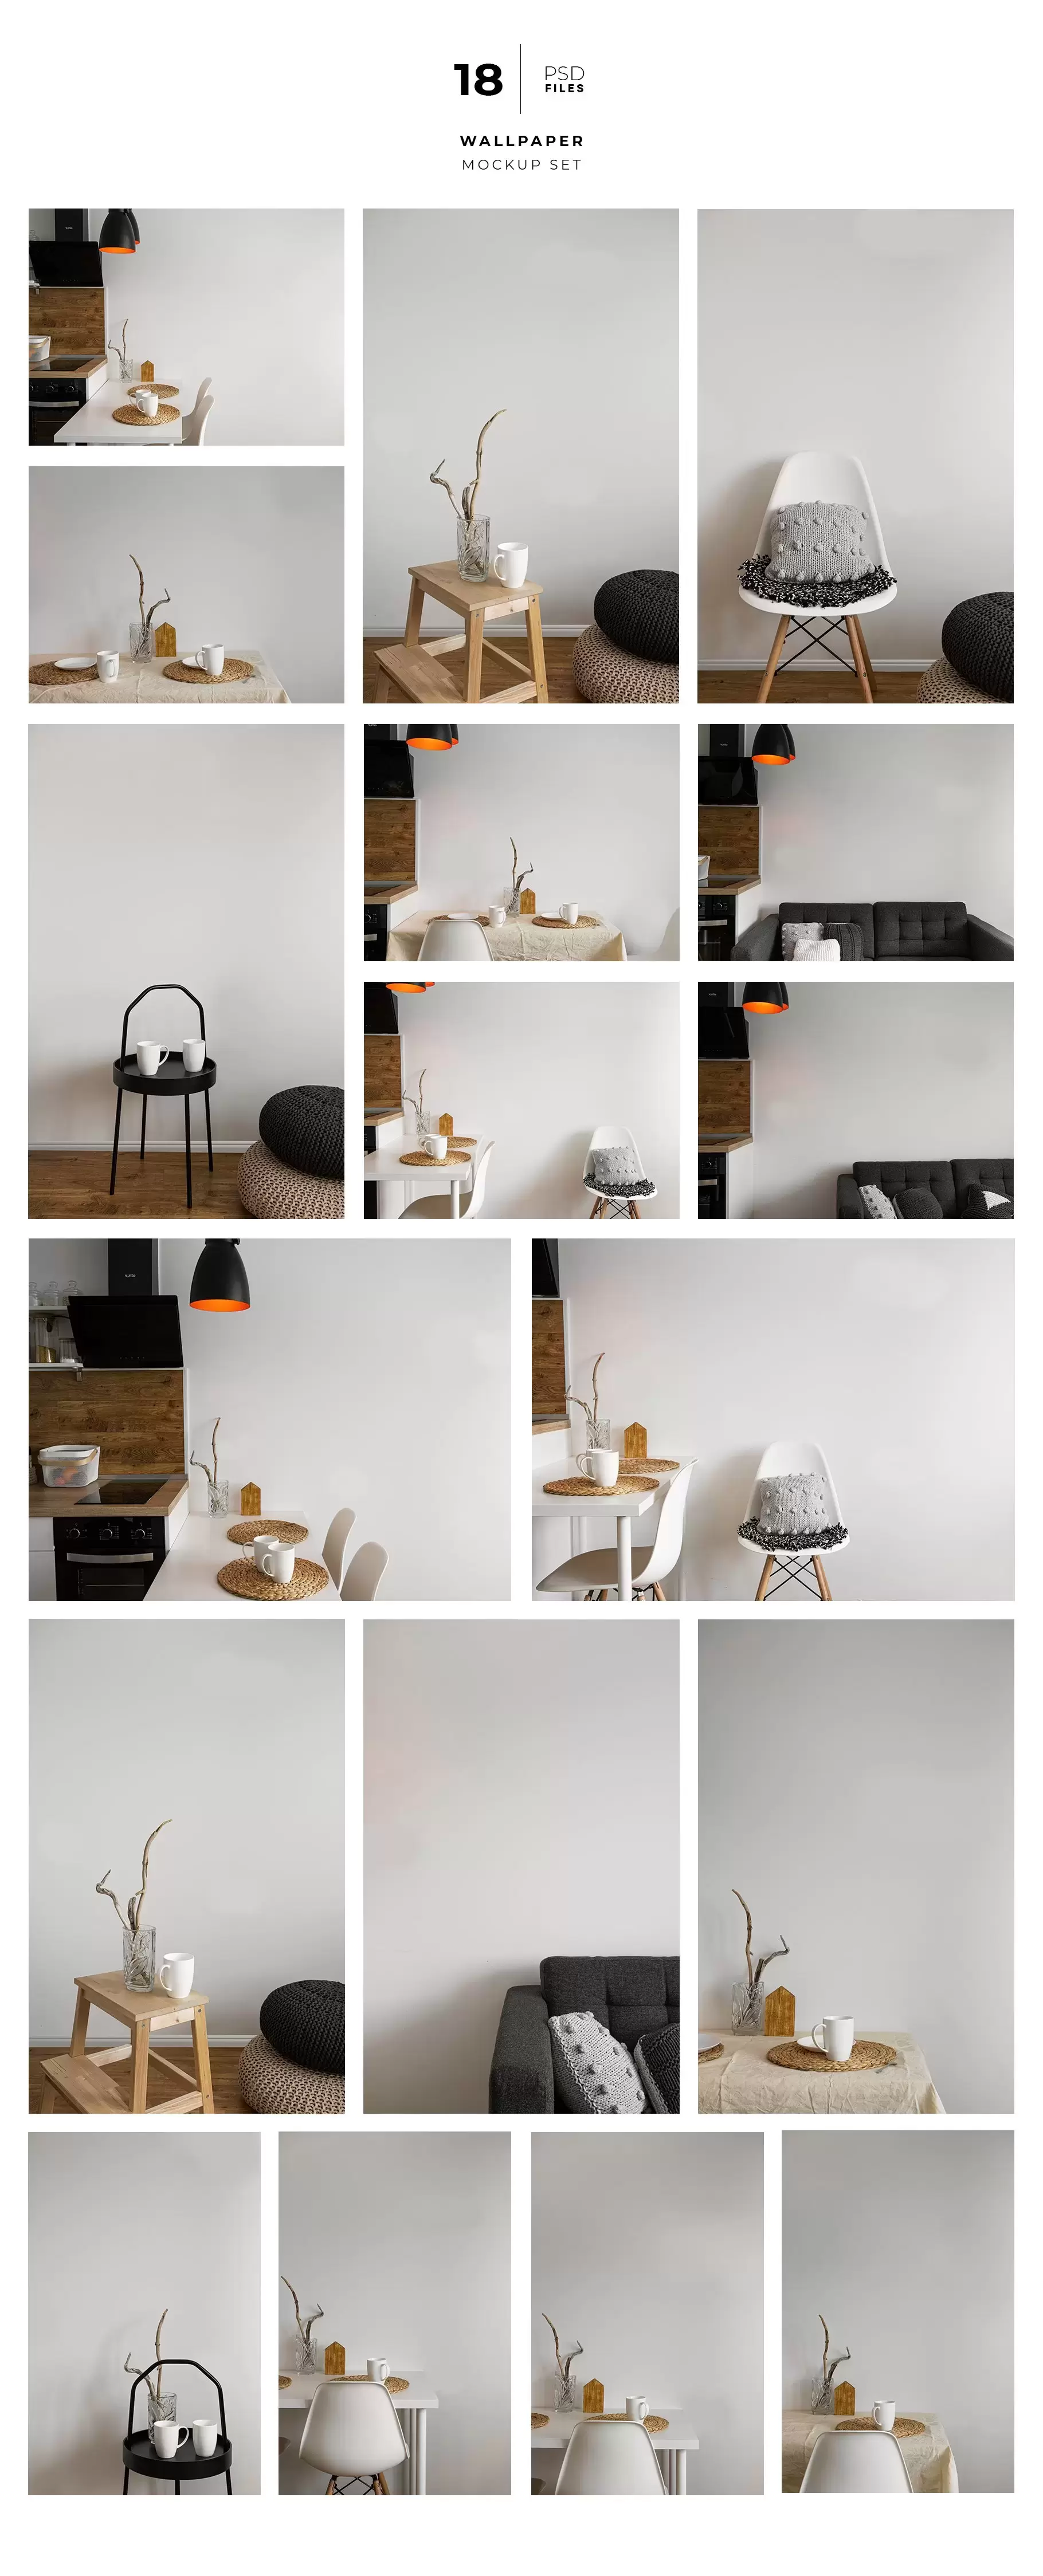 家居室内场景墙纸艺术图案展示样机[2.69GB,PSD]免费下载插图7